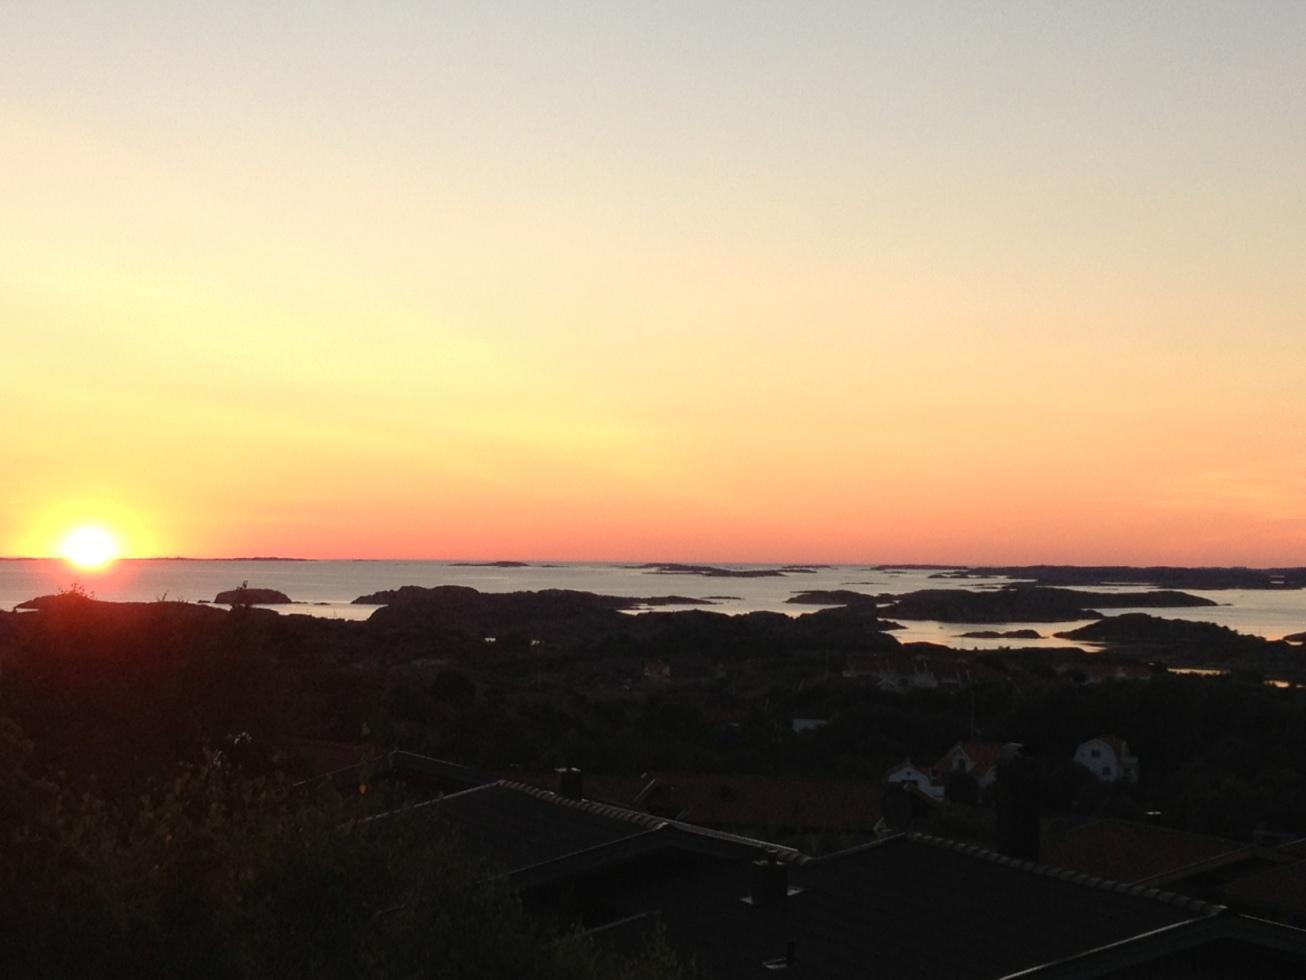 En mycket fin solnedgång i vackra Bohuslän